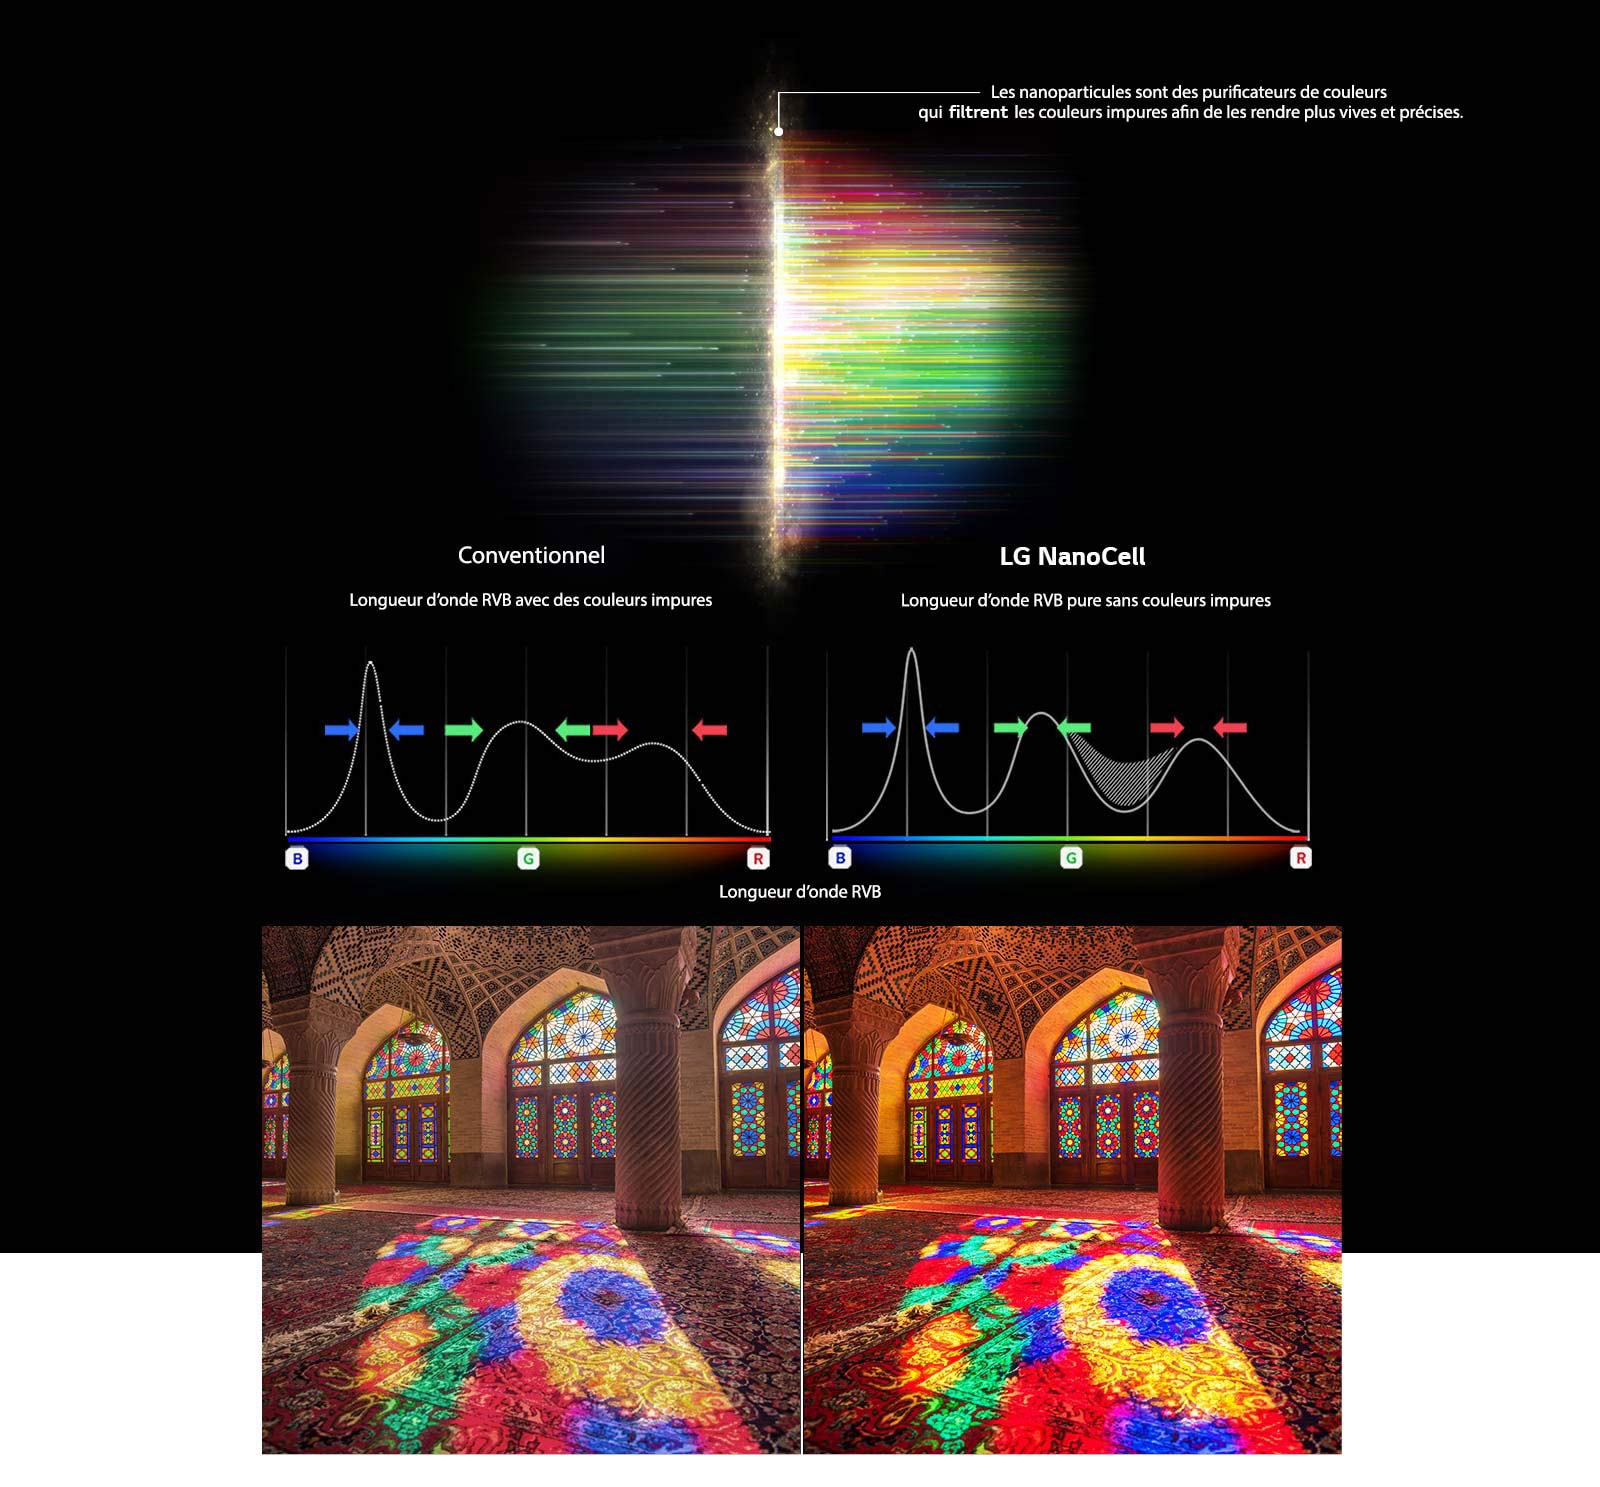 " Ce graphique du spectre RVB montre la différence entre des images normales et des images avec des couleurs ternes nettoyées et compare la solidité des couleurs entre la technologie normale et la technologie NanoCell."